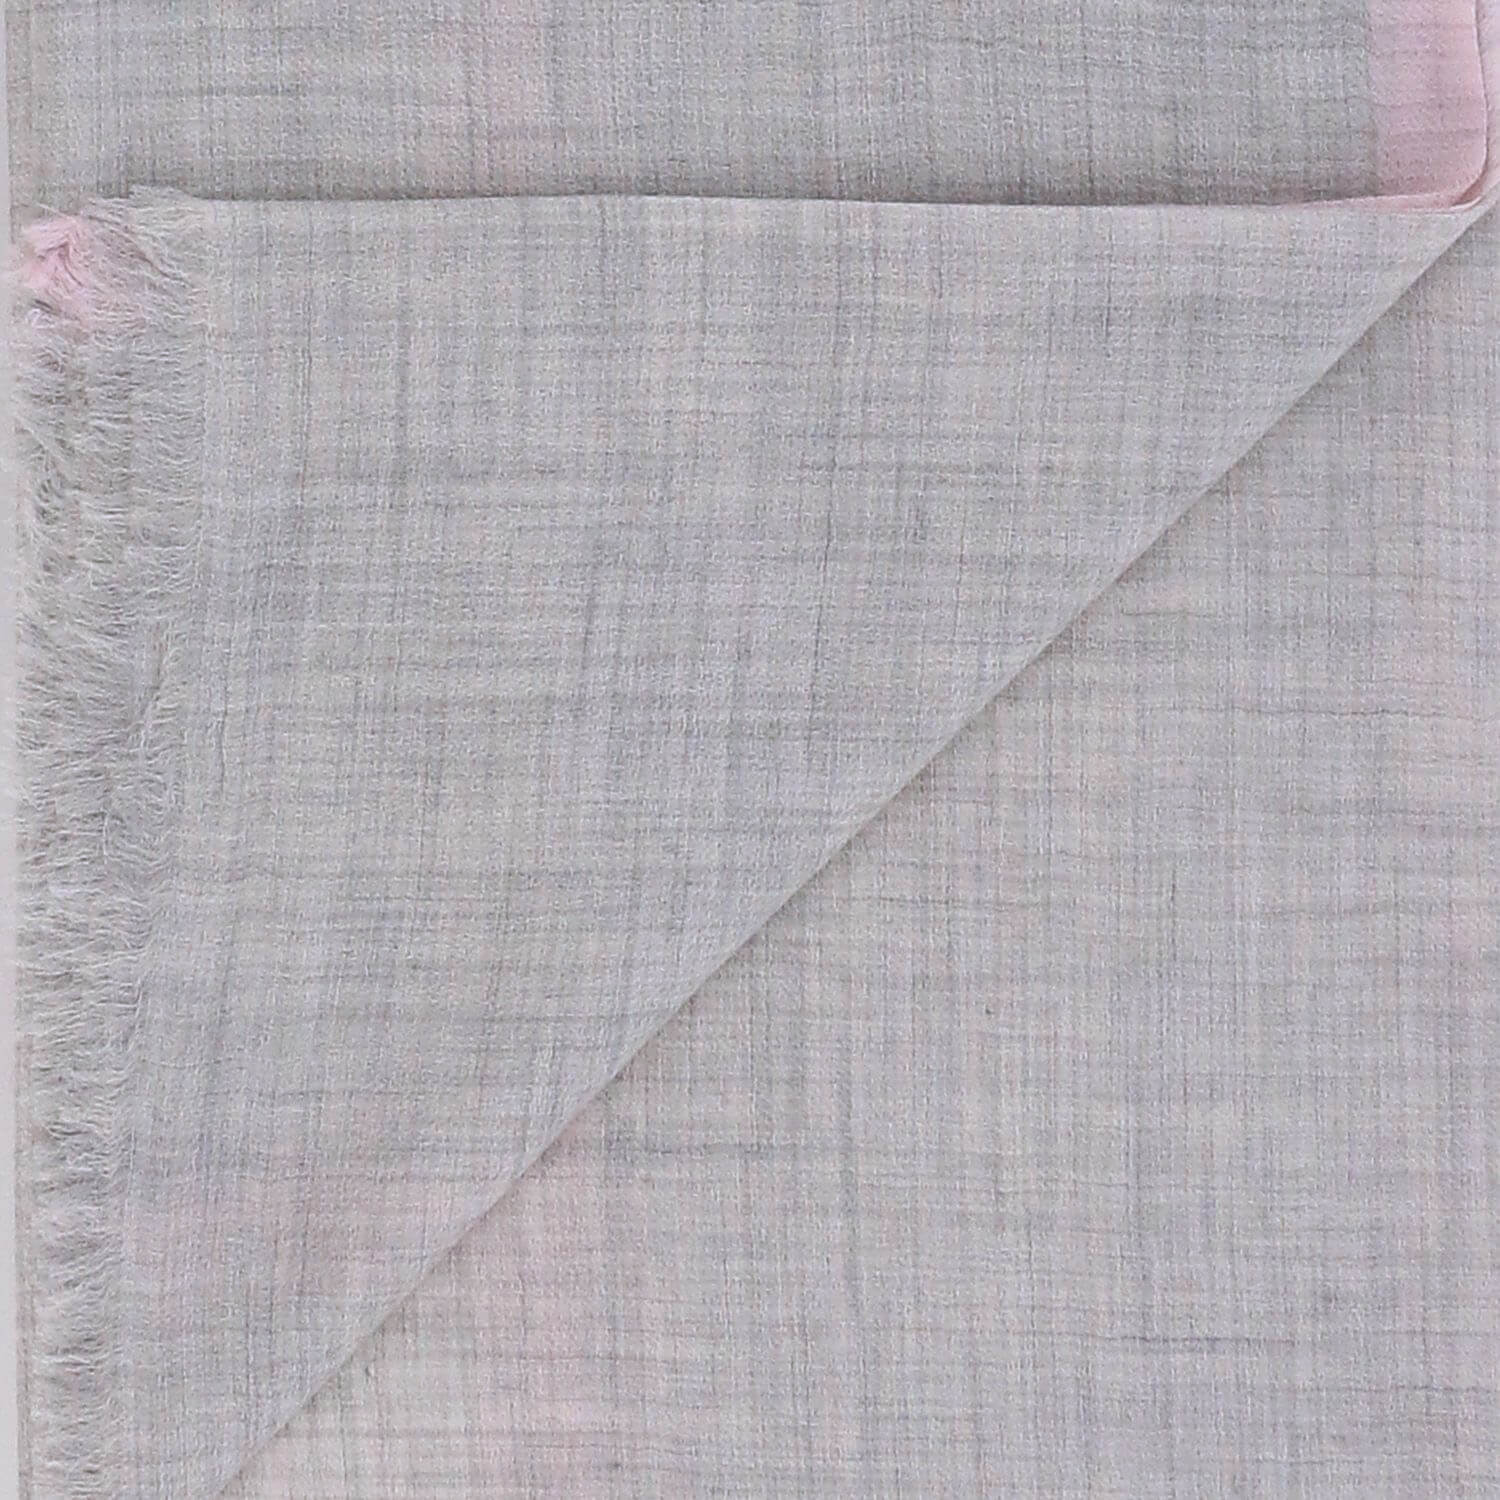 Кашемировый шарф Armani 70х200 см, цвет Серый, фото 2